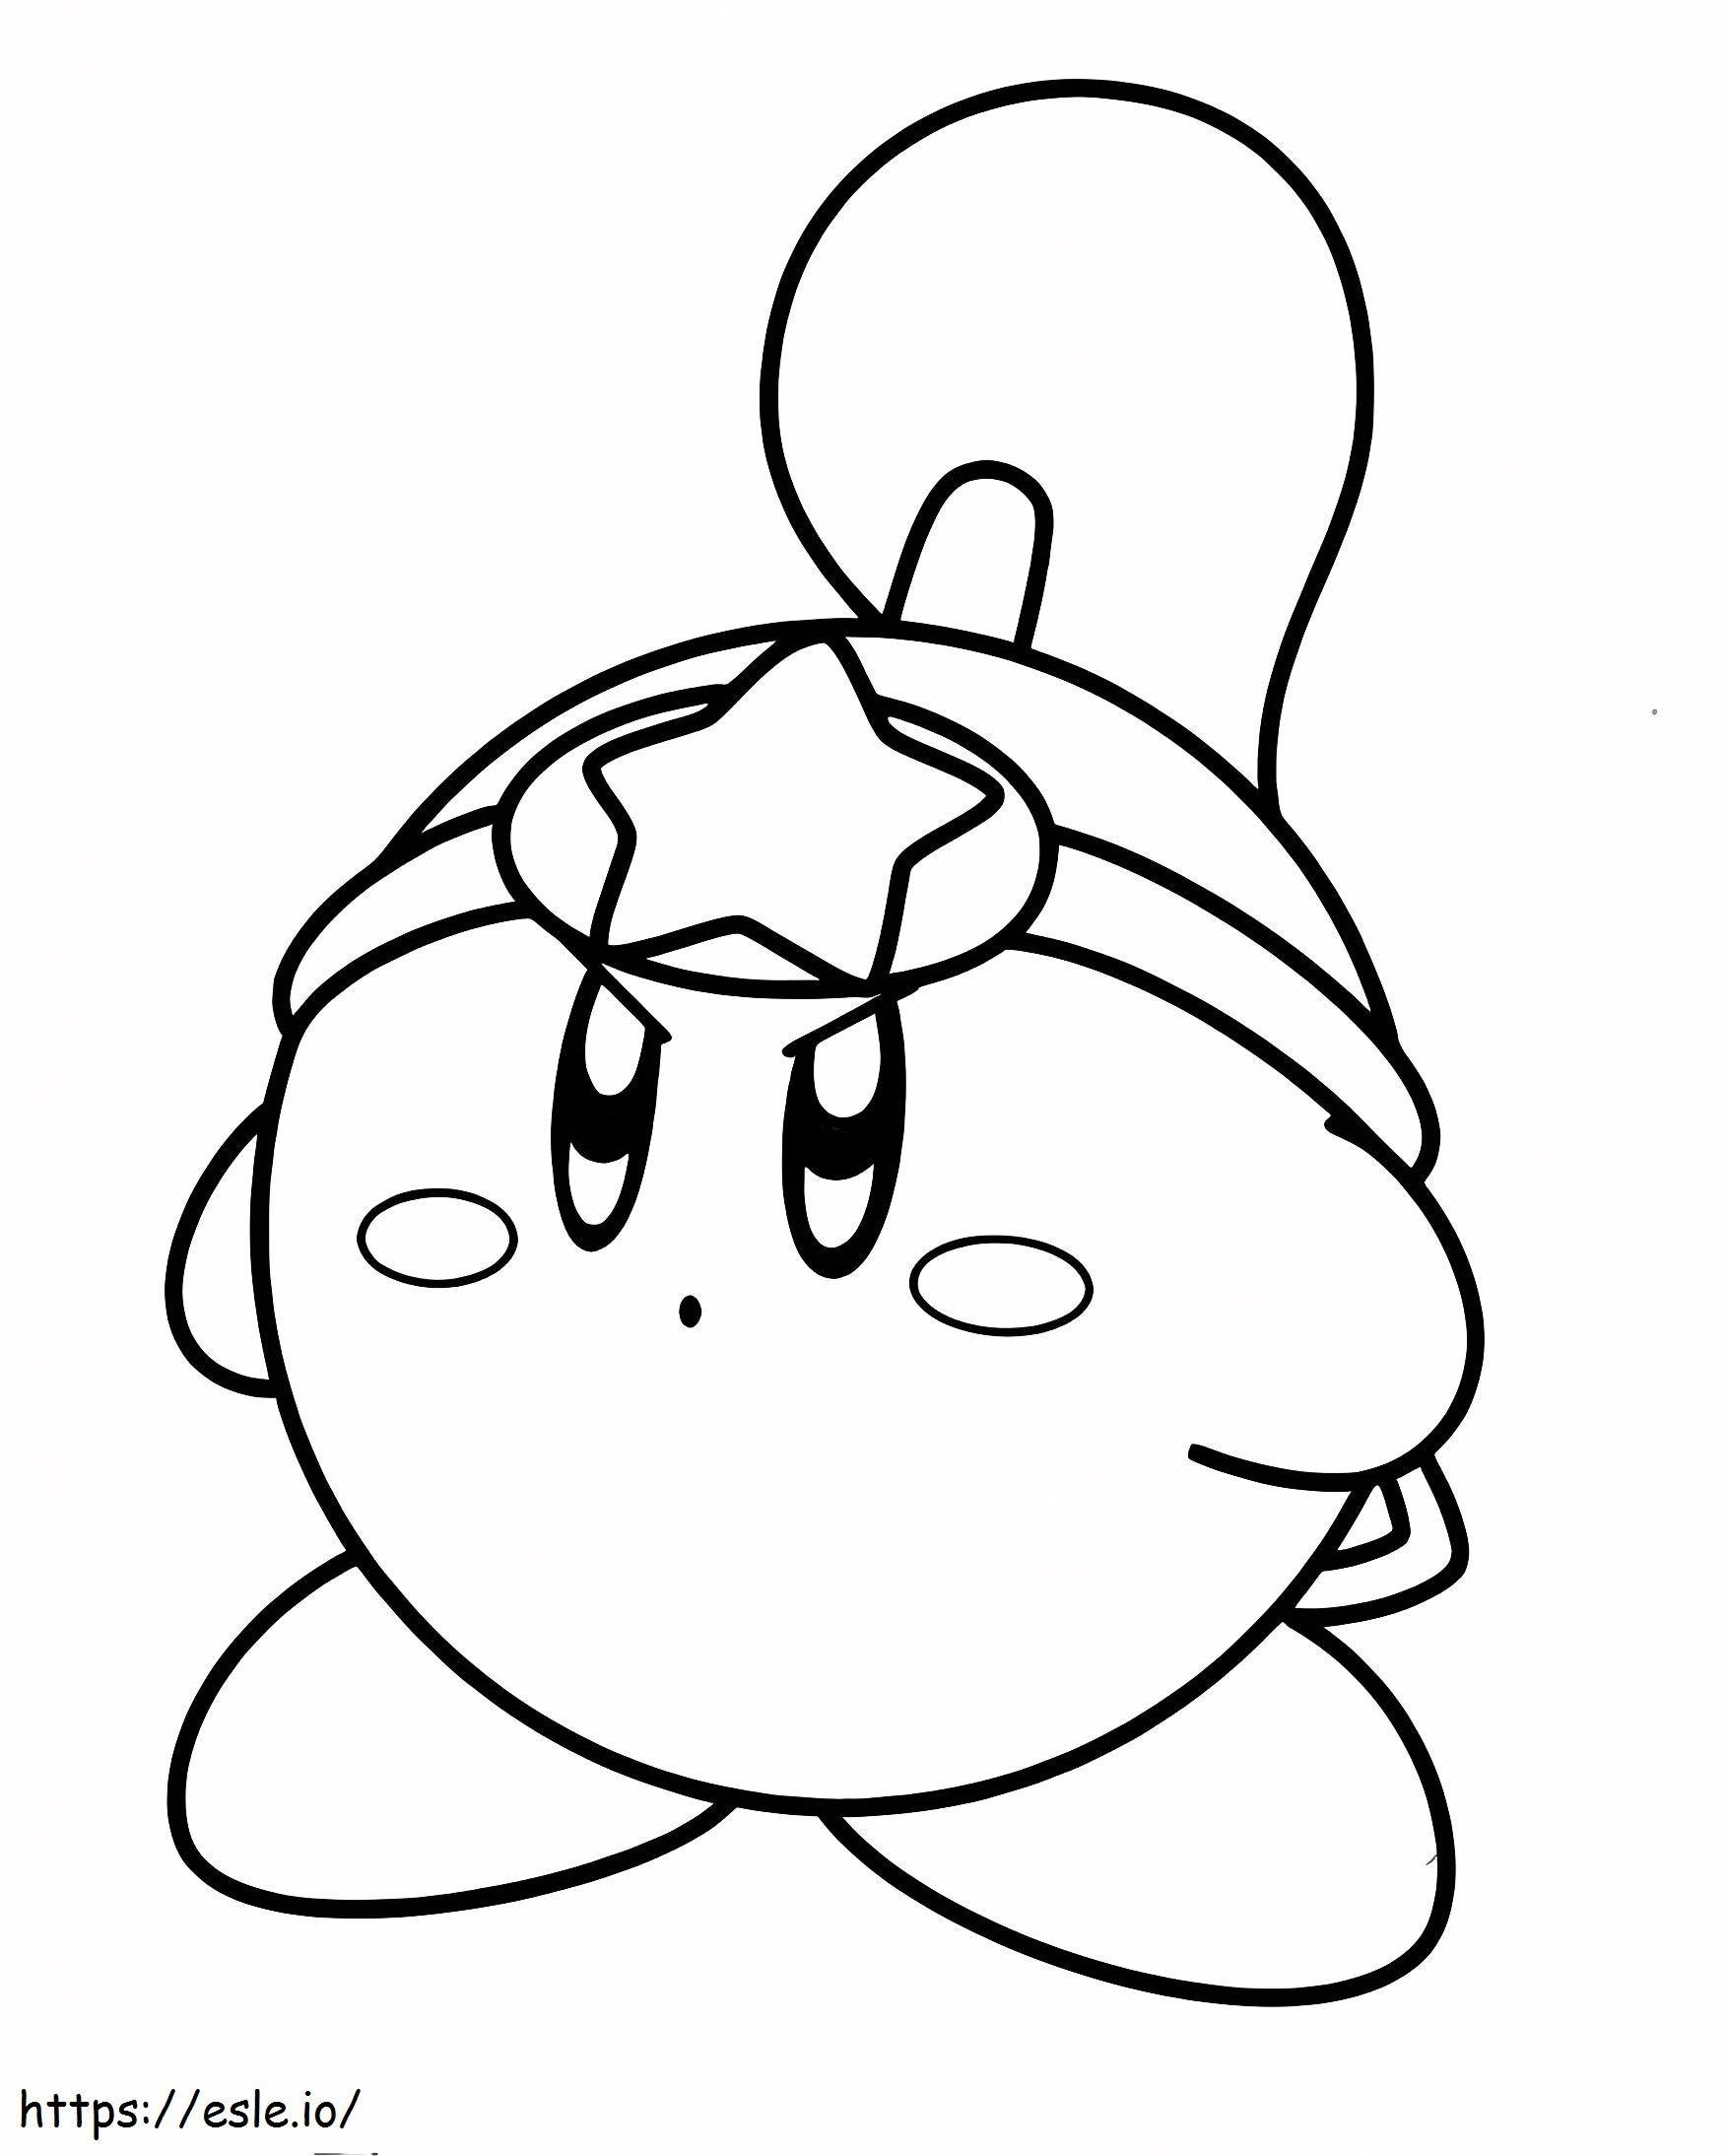 Coloriage Kirby gratuit à imprimer dessin